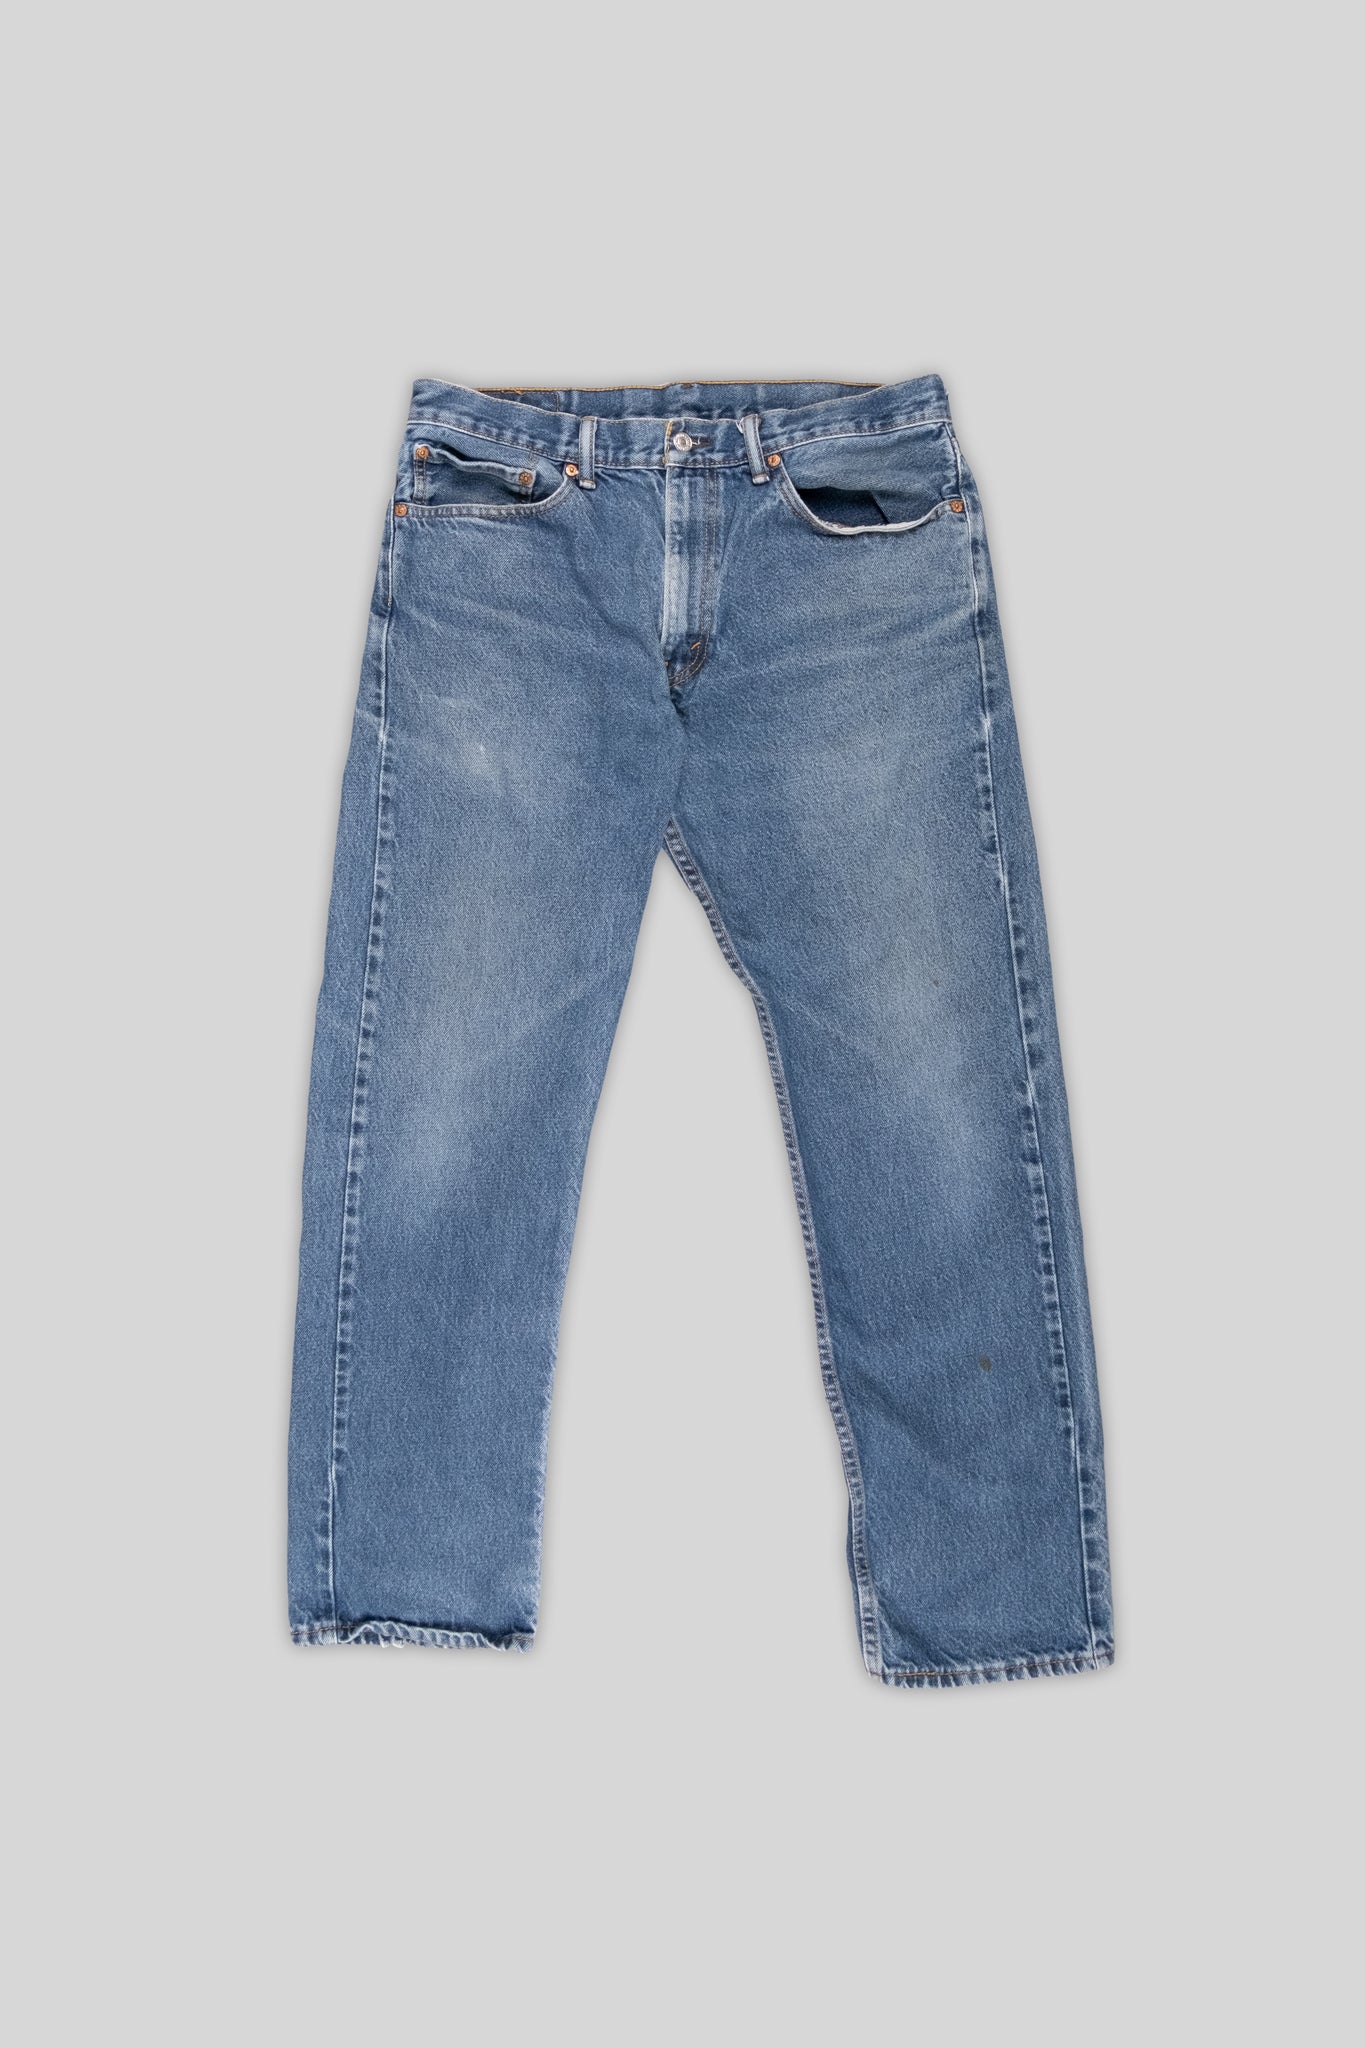 Levis Jeans 505 Worn Denim